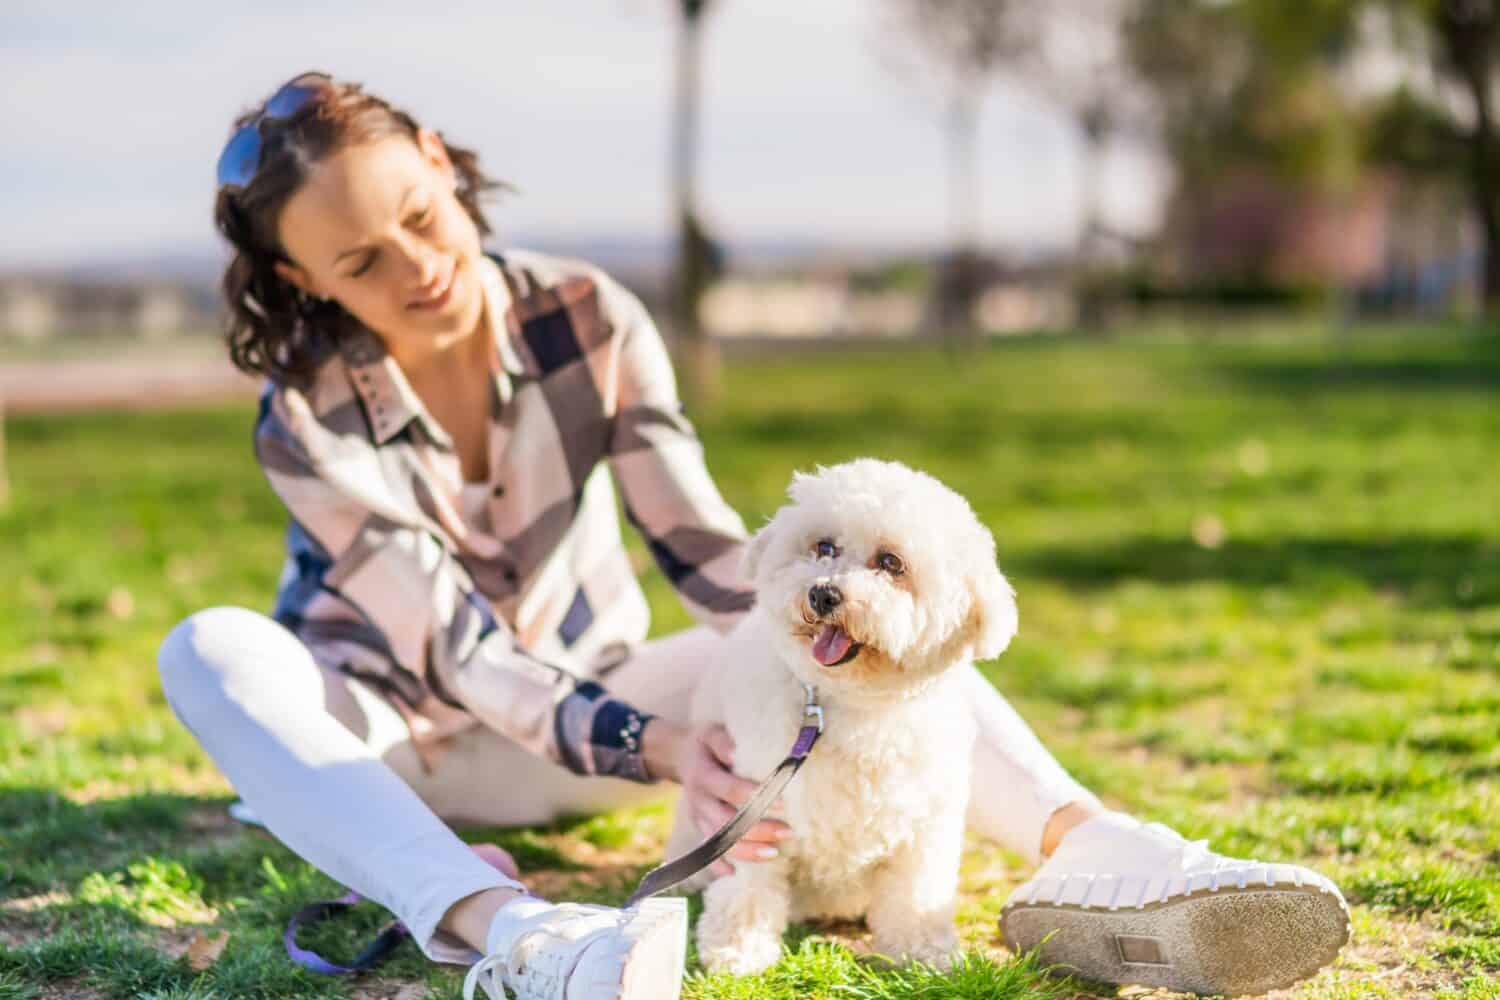 Una donna felice sta giocando con il suo cane bianco bichon frise in una giornata di sole nel parco.